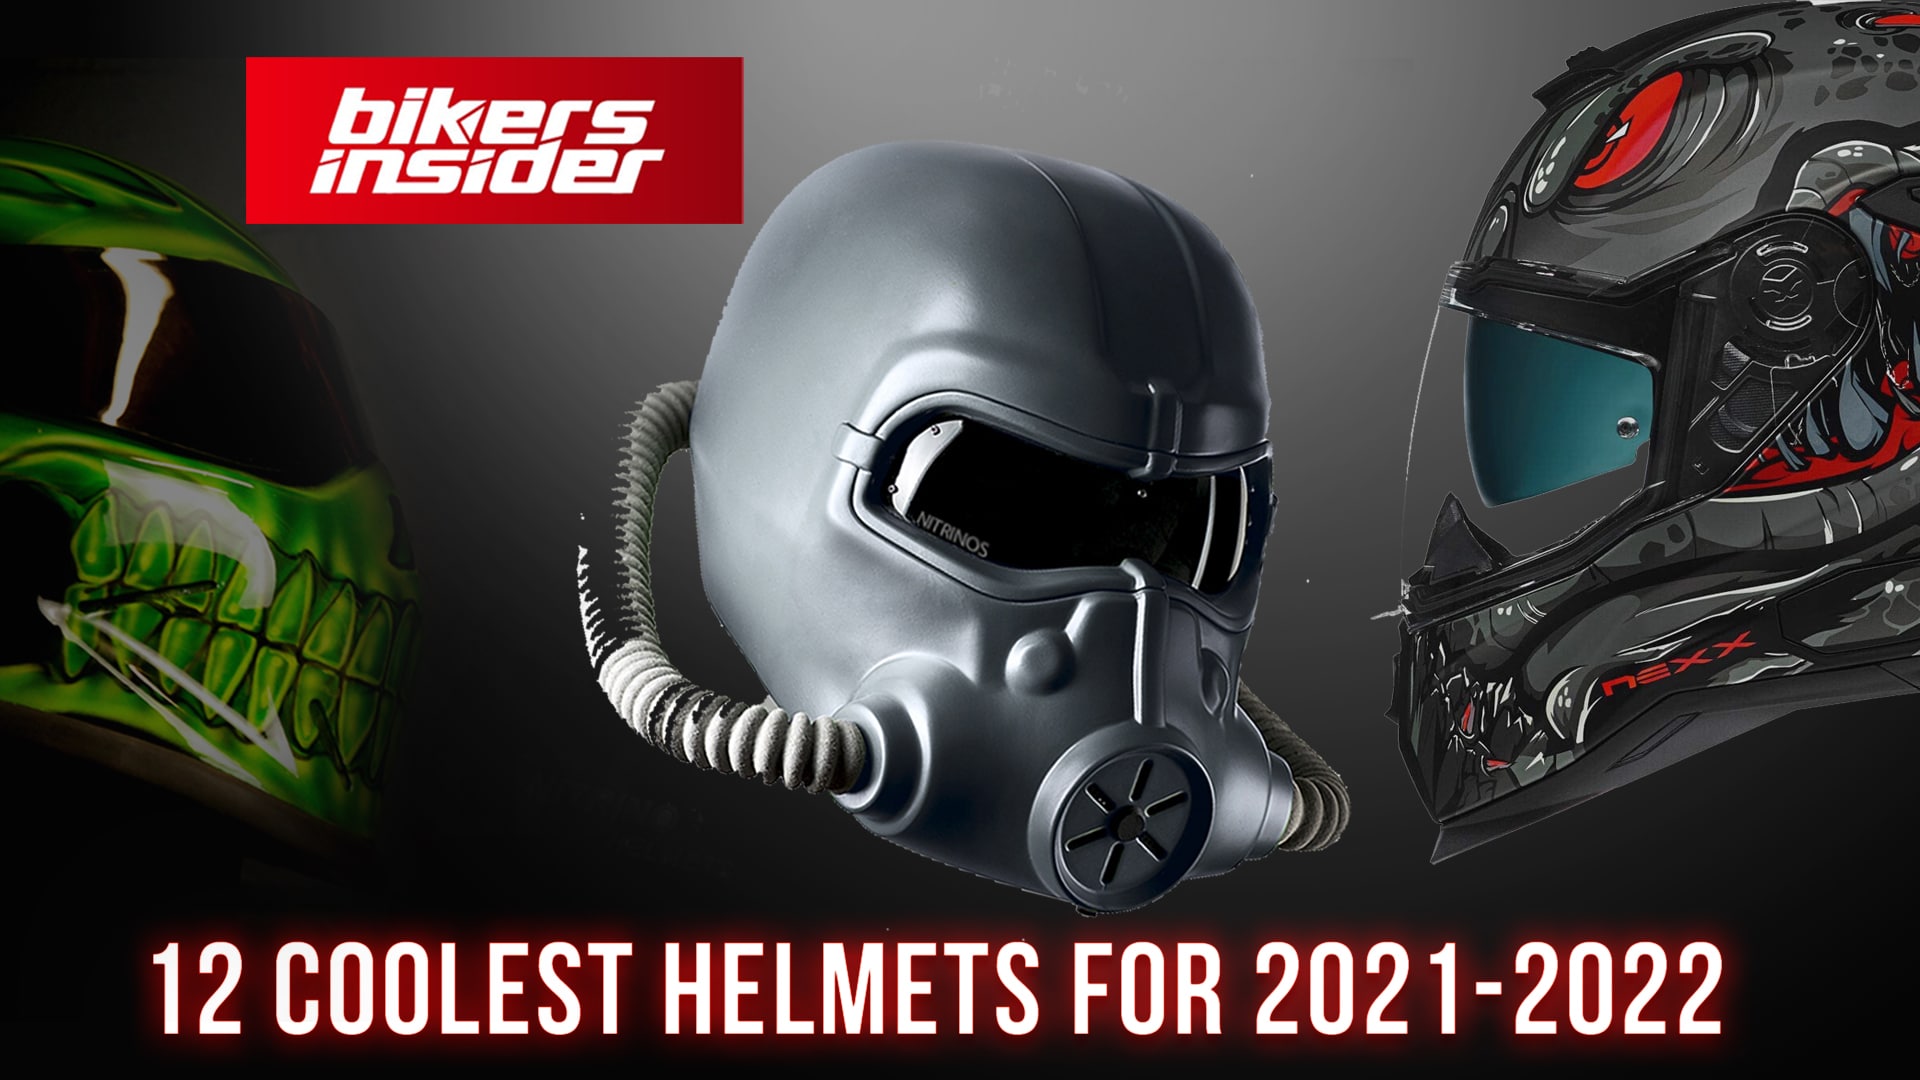 coolest motorcycle helmet ever